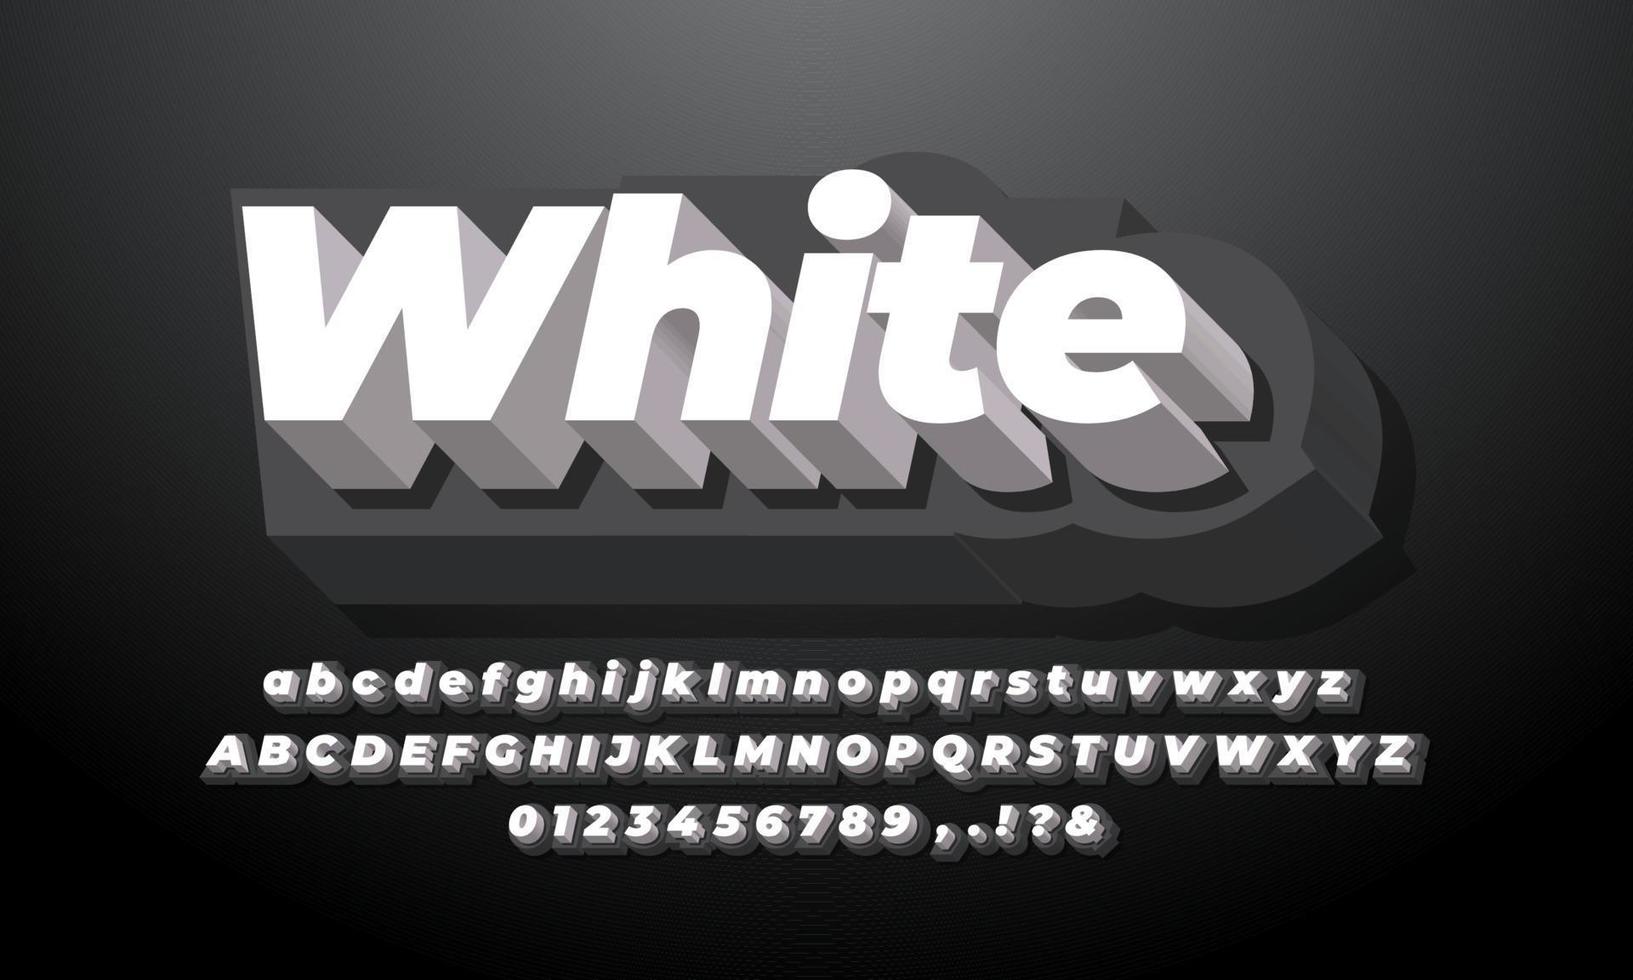 svart och vitt 3d modernt rent alfabet eller bokstavstexteffekt eller teckensnittseffektdesign vektor